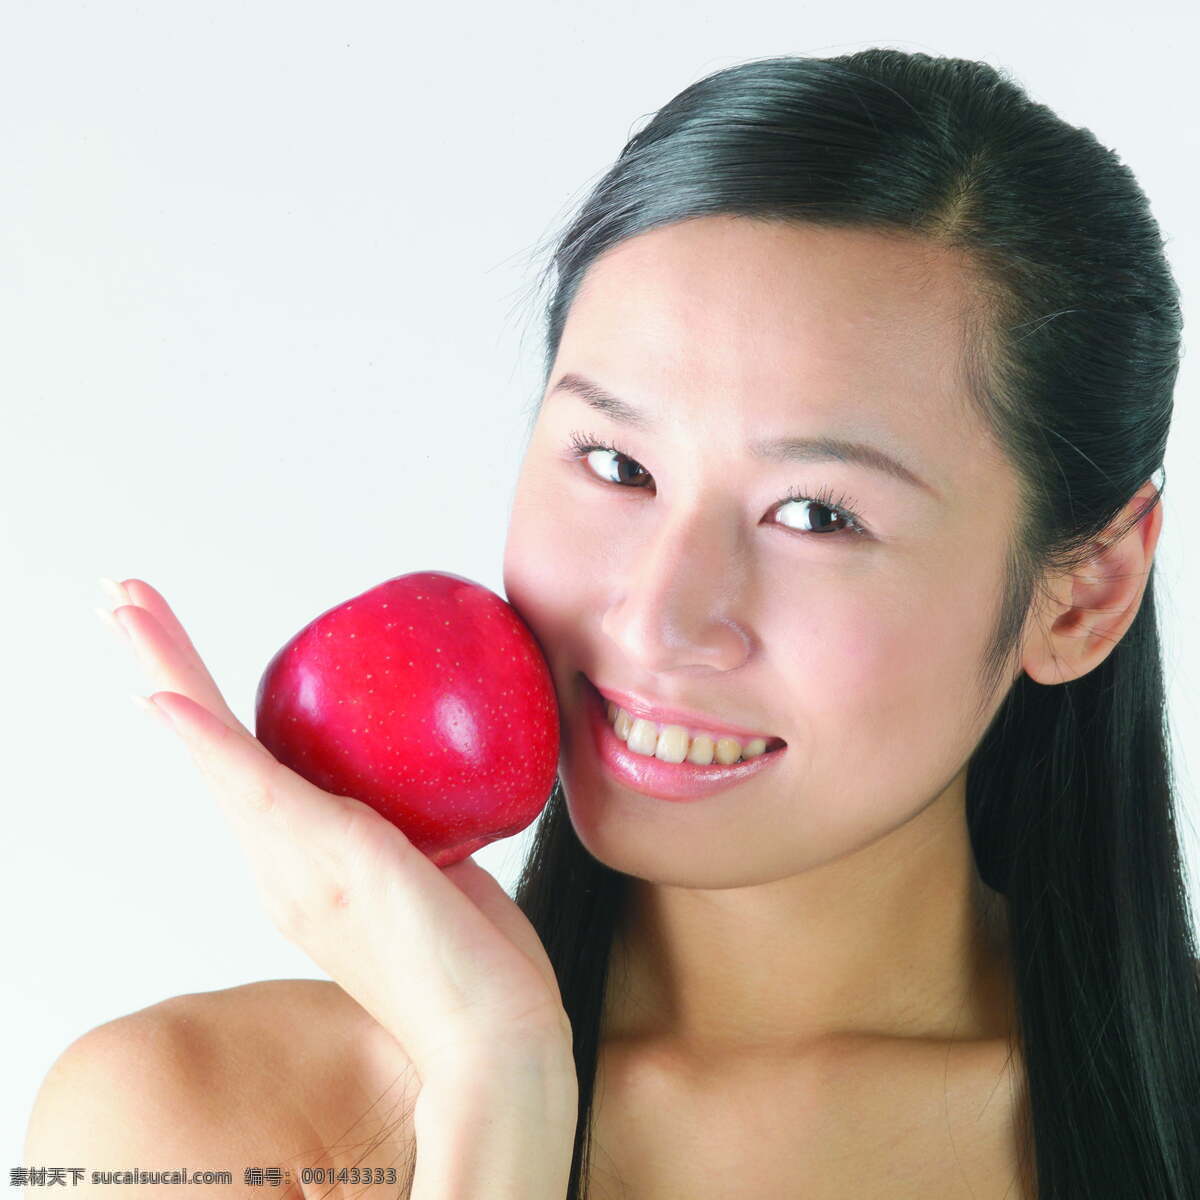 苹果 放在 脸上 女孩 水疗 美容 养生 护肤 spa 女性 女人 美体 水果 美女图片 人物图片